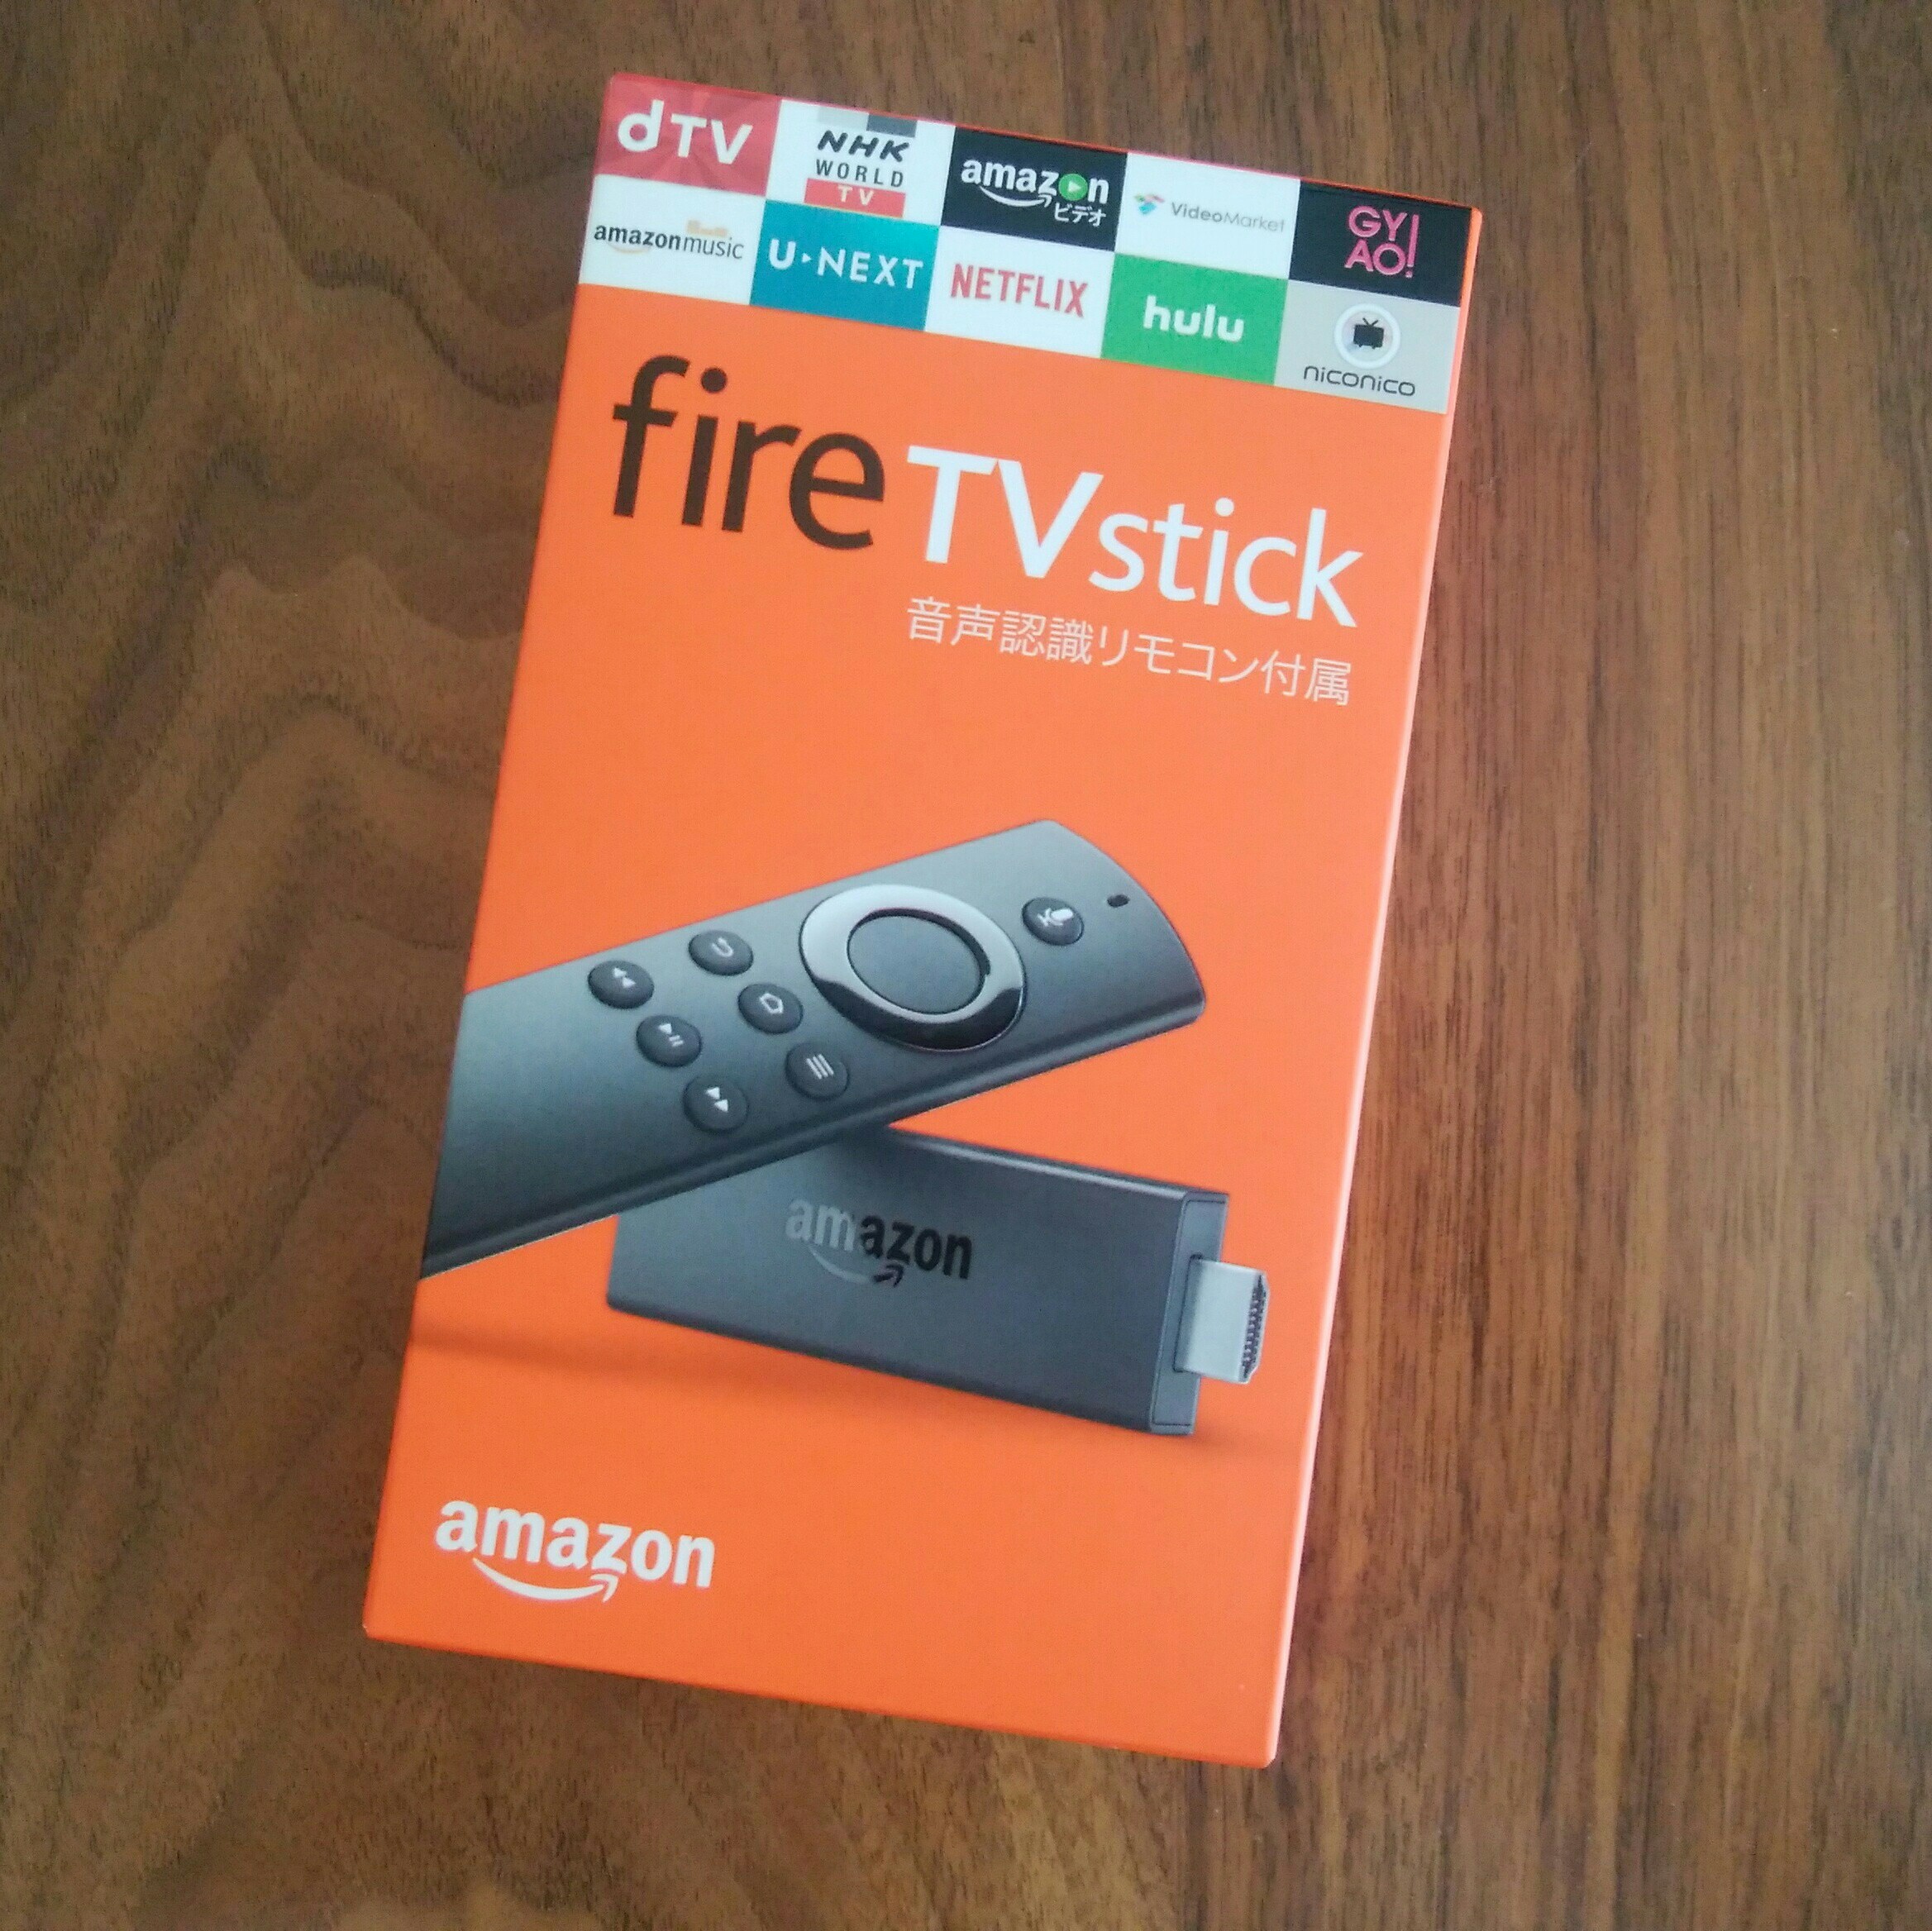 Amazon Fire TV Stick を買ったら #DAZN だけでなく他のビデオコンテンツライフも充実してすごーい！たーのしー！